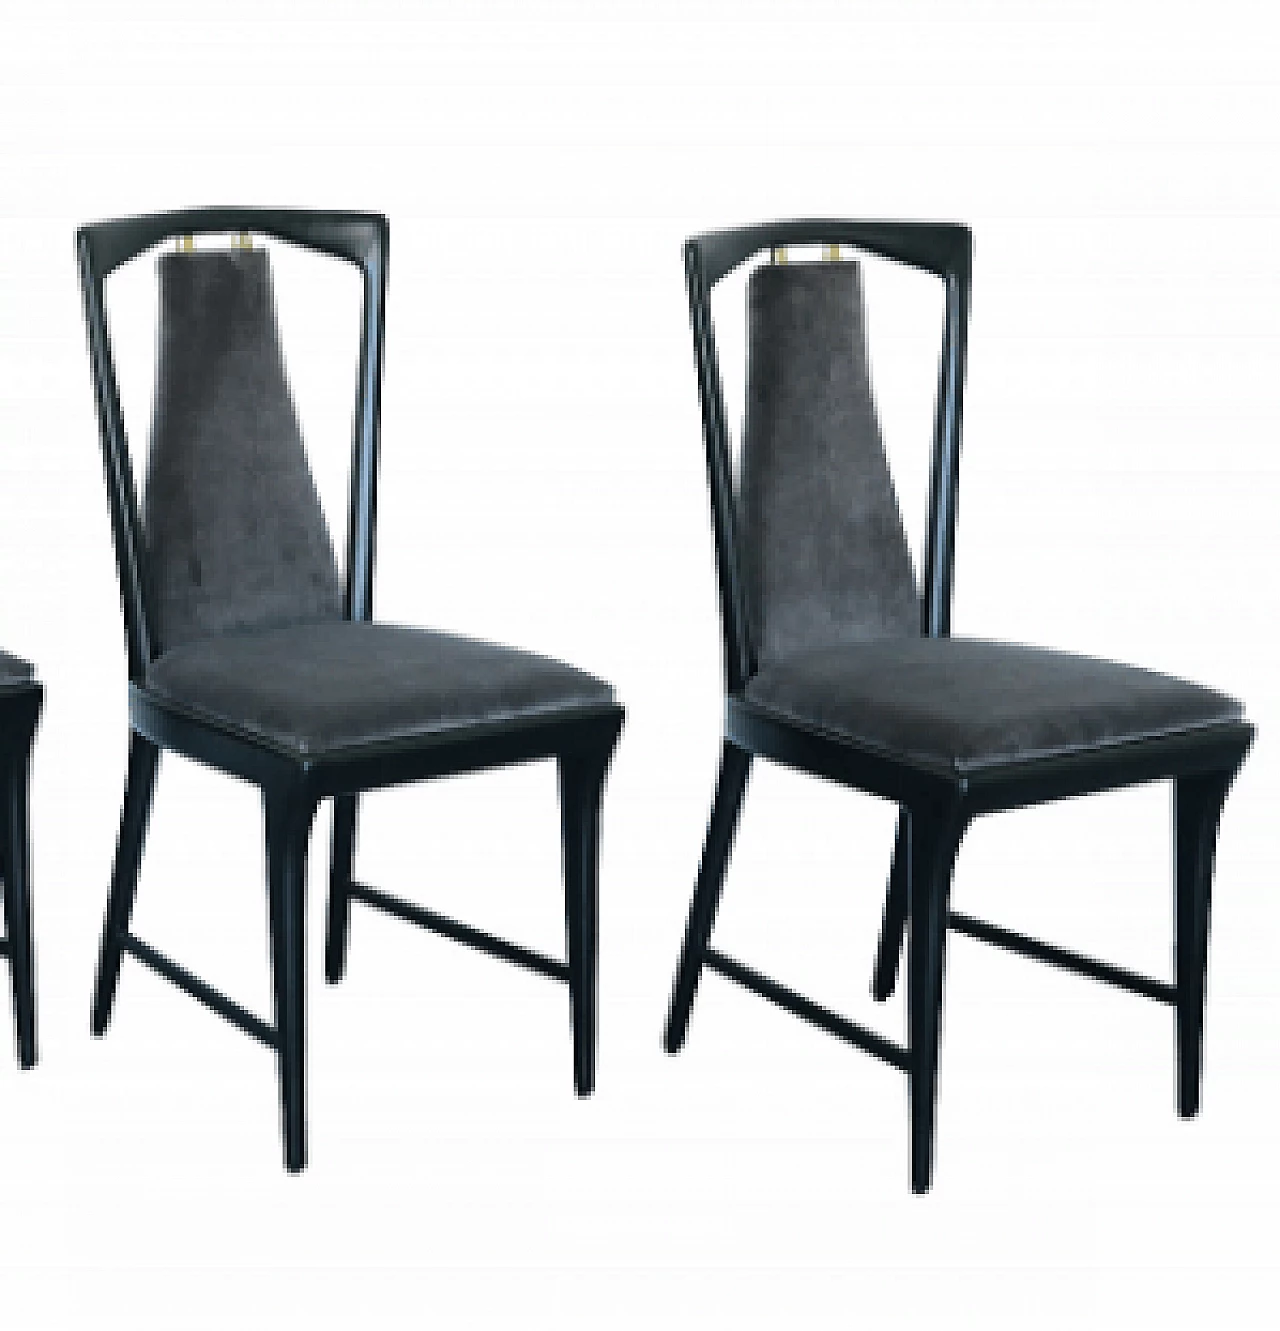 4 Chairs by Osvaldo Borsani for Aterlier Borsani Varedo, 1940s 1131289